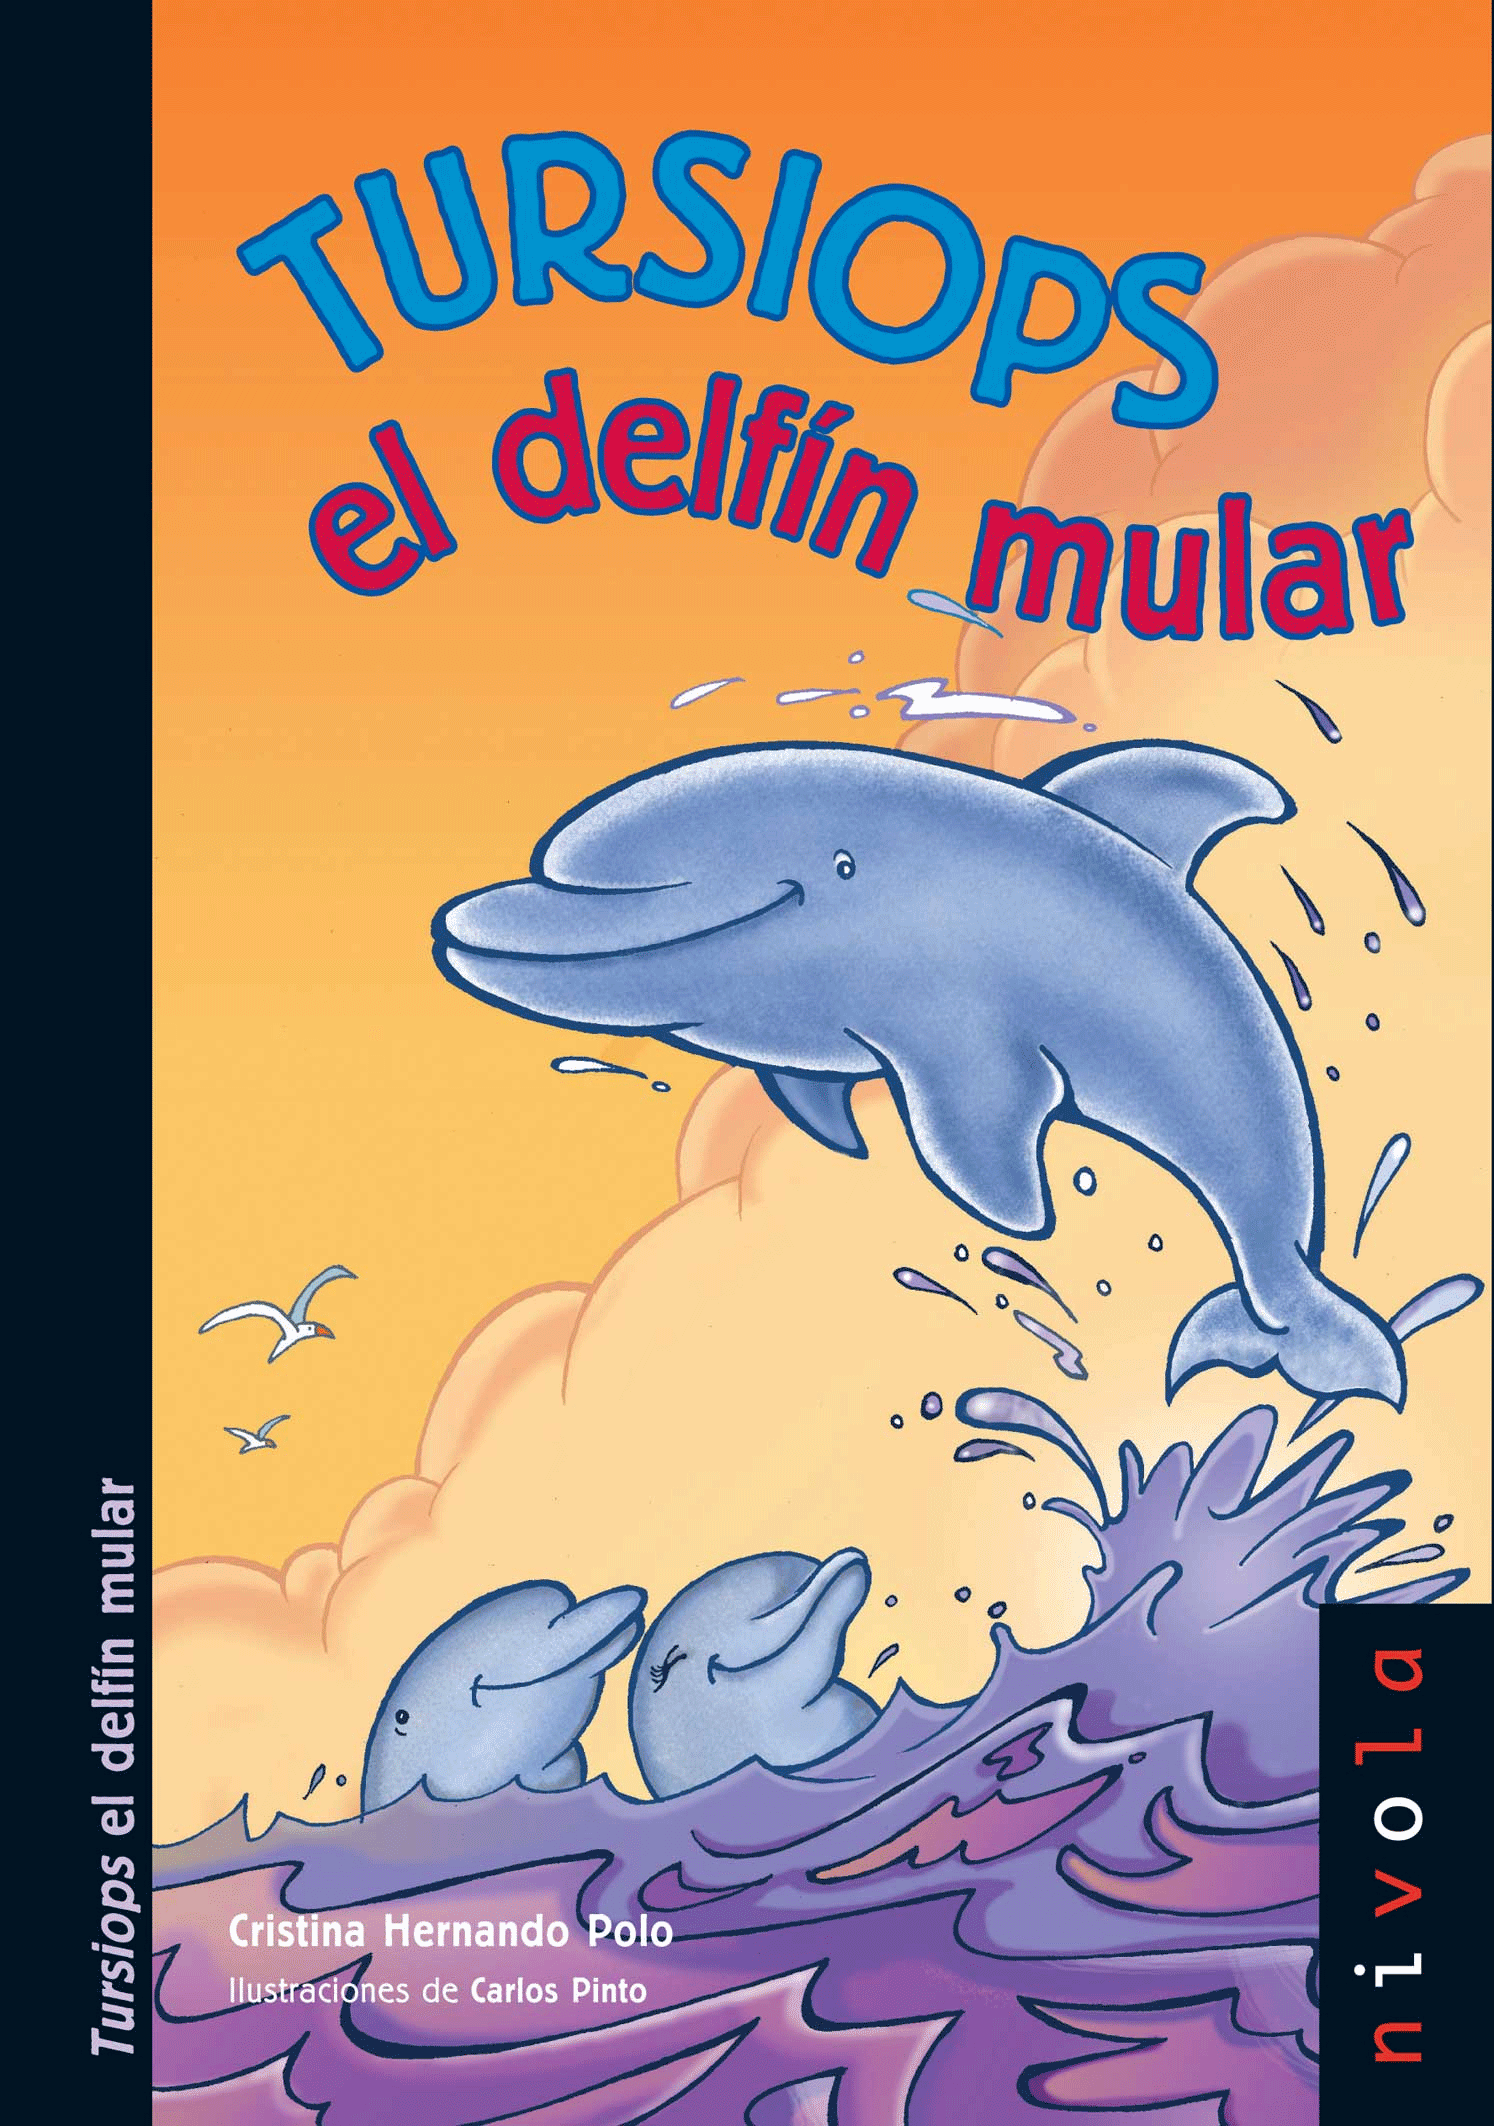 Tursiops el delfín mular